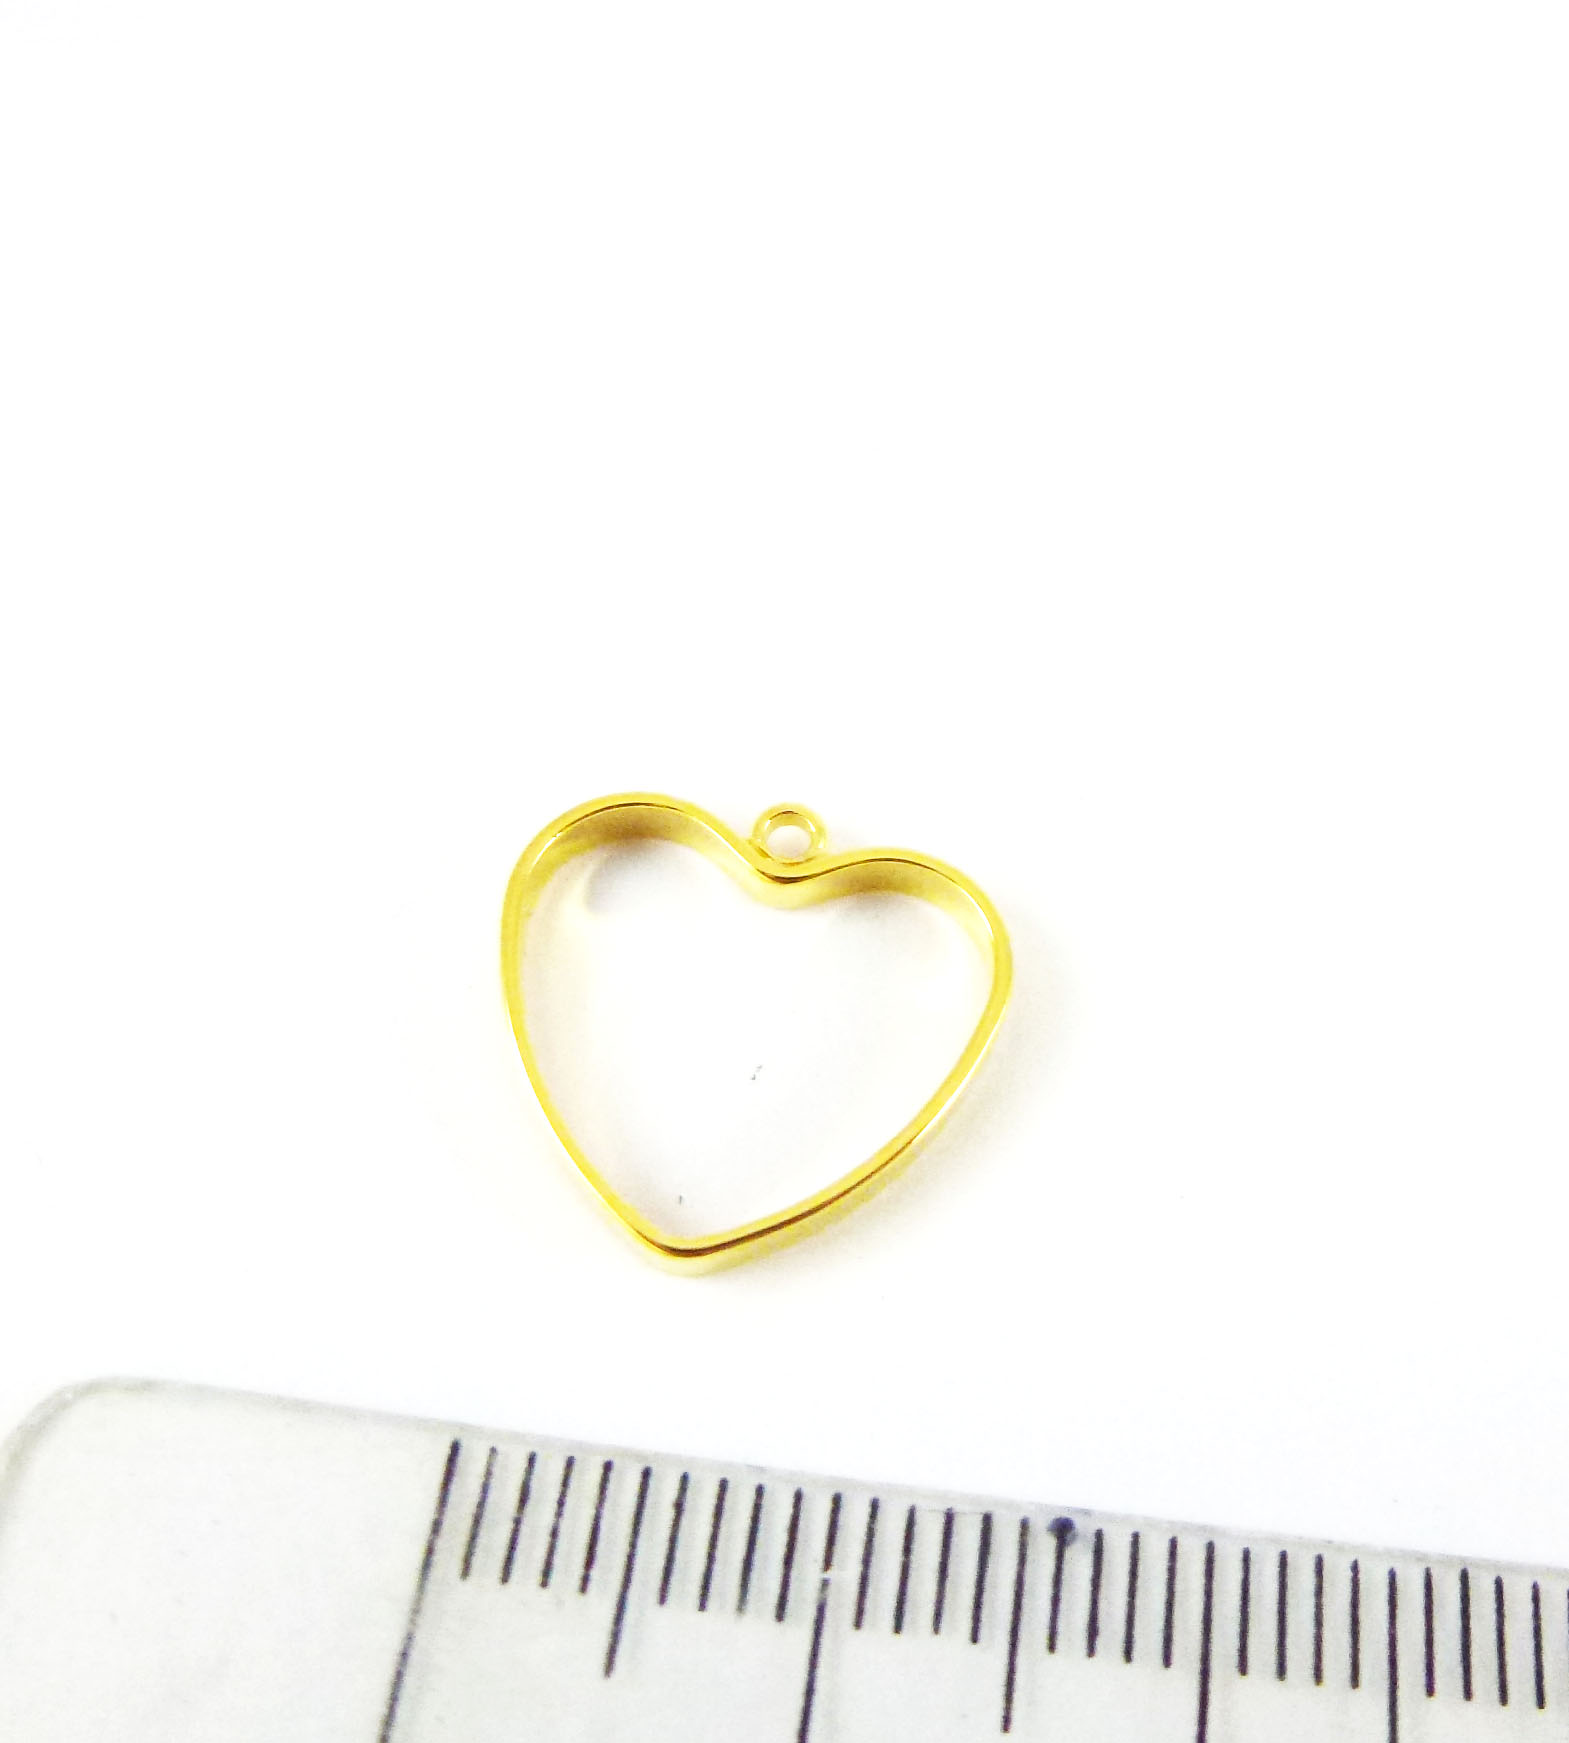 15mm銅鍍金色單孔心形框